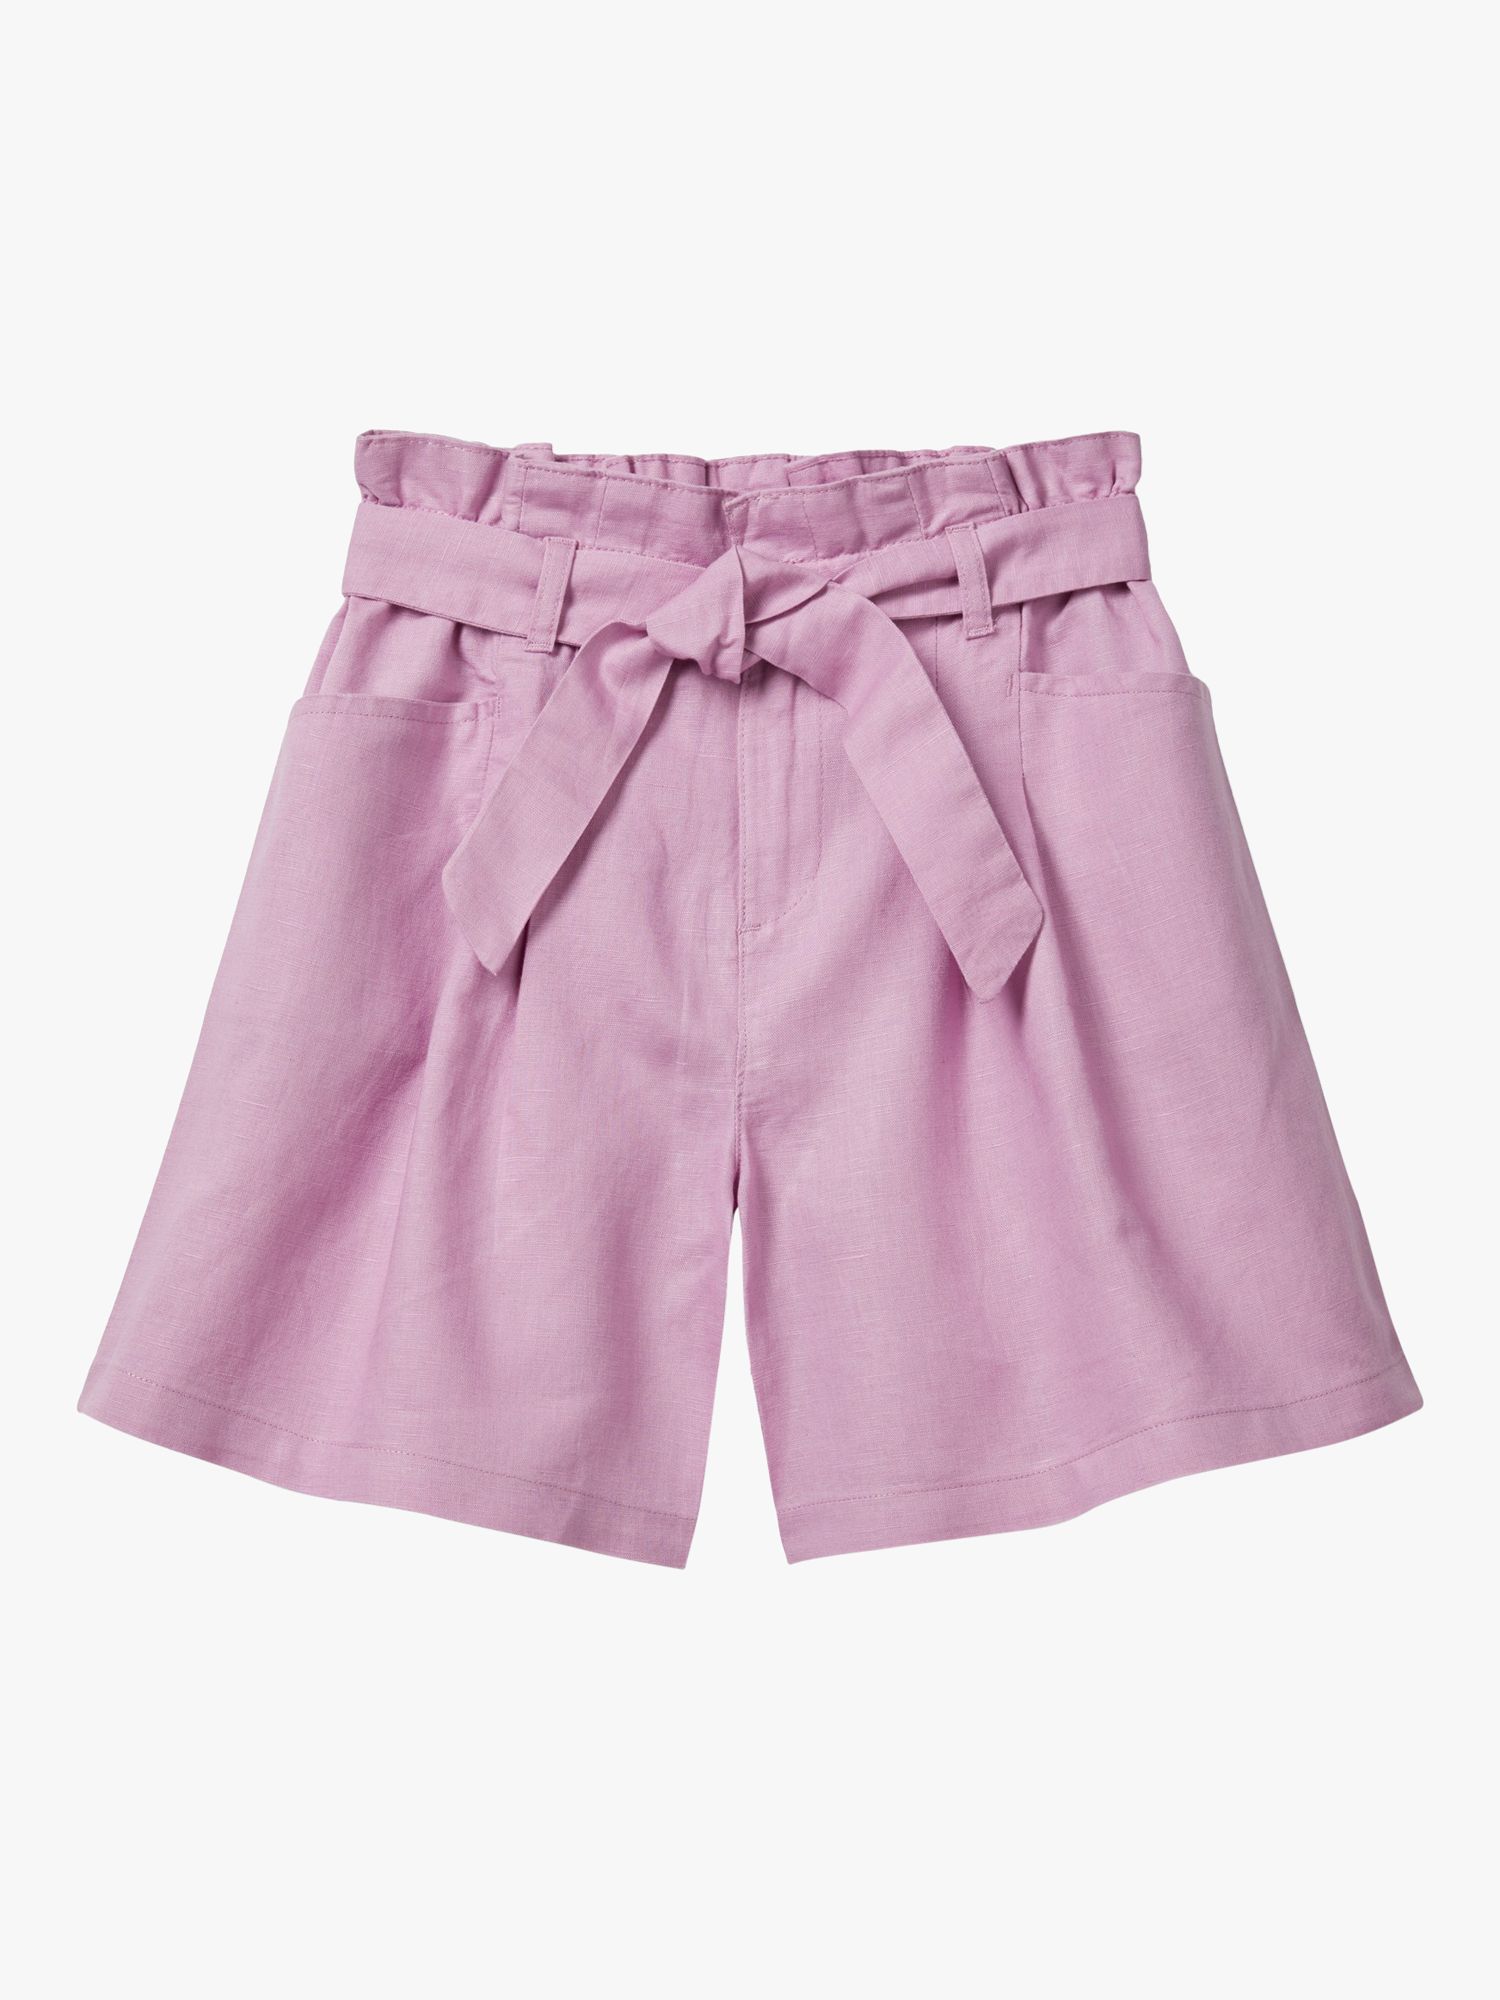 Benetton Kids' Linen Blend Tie Waist Shorts, Lilac, 6-7 years